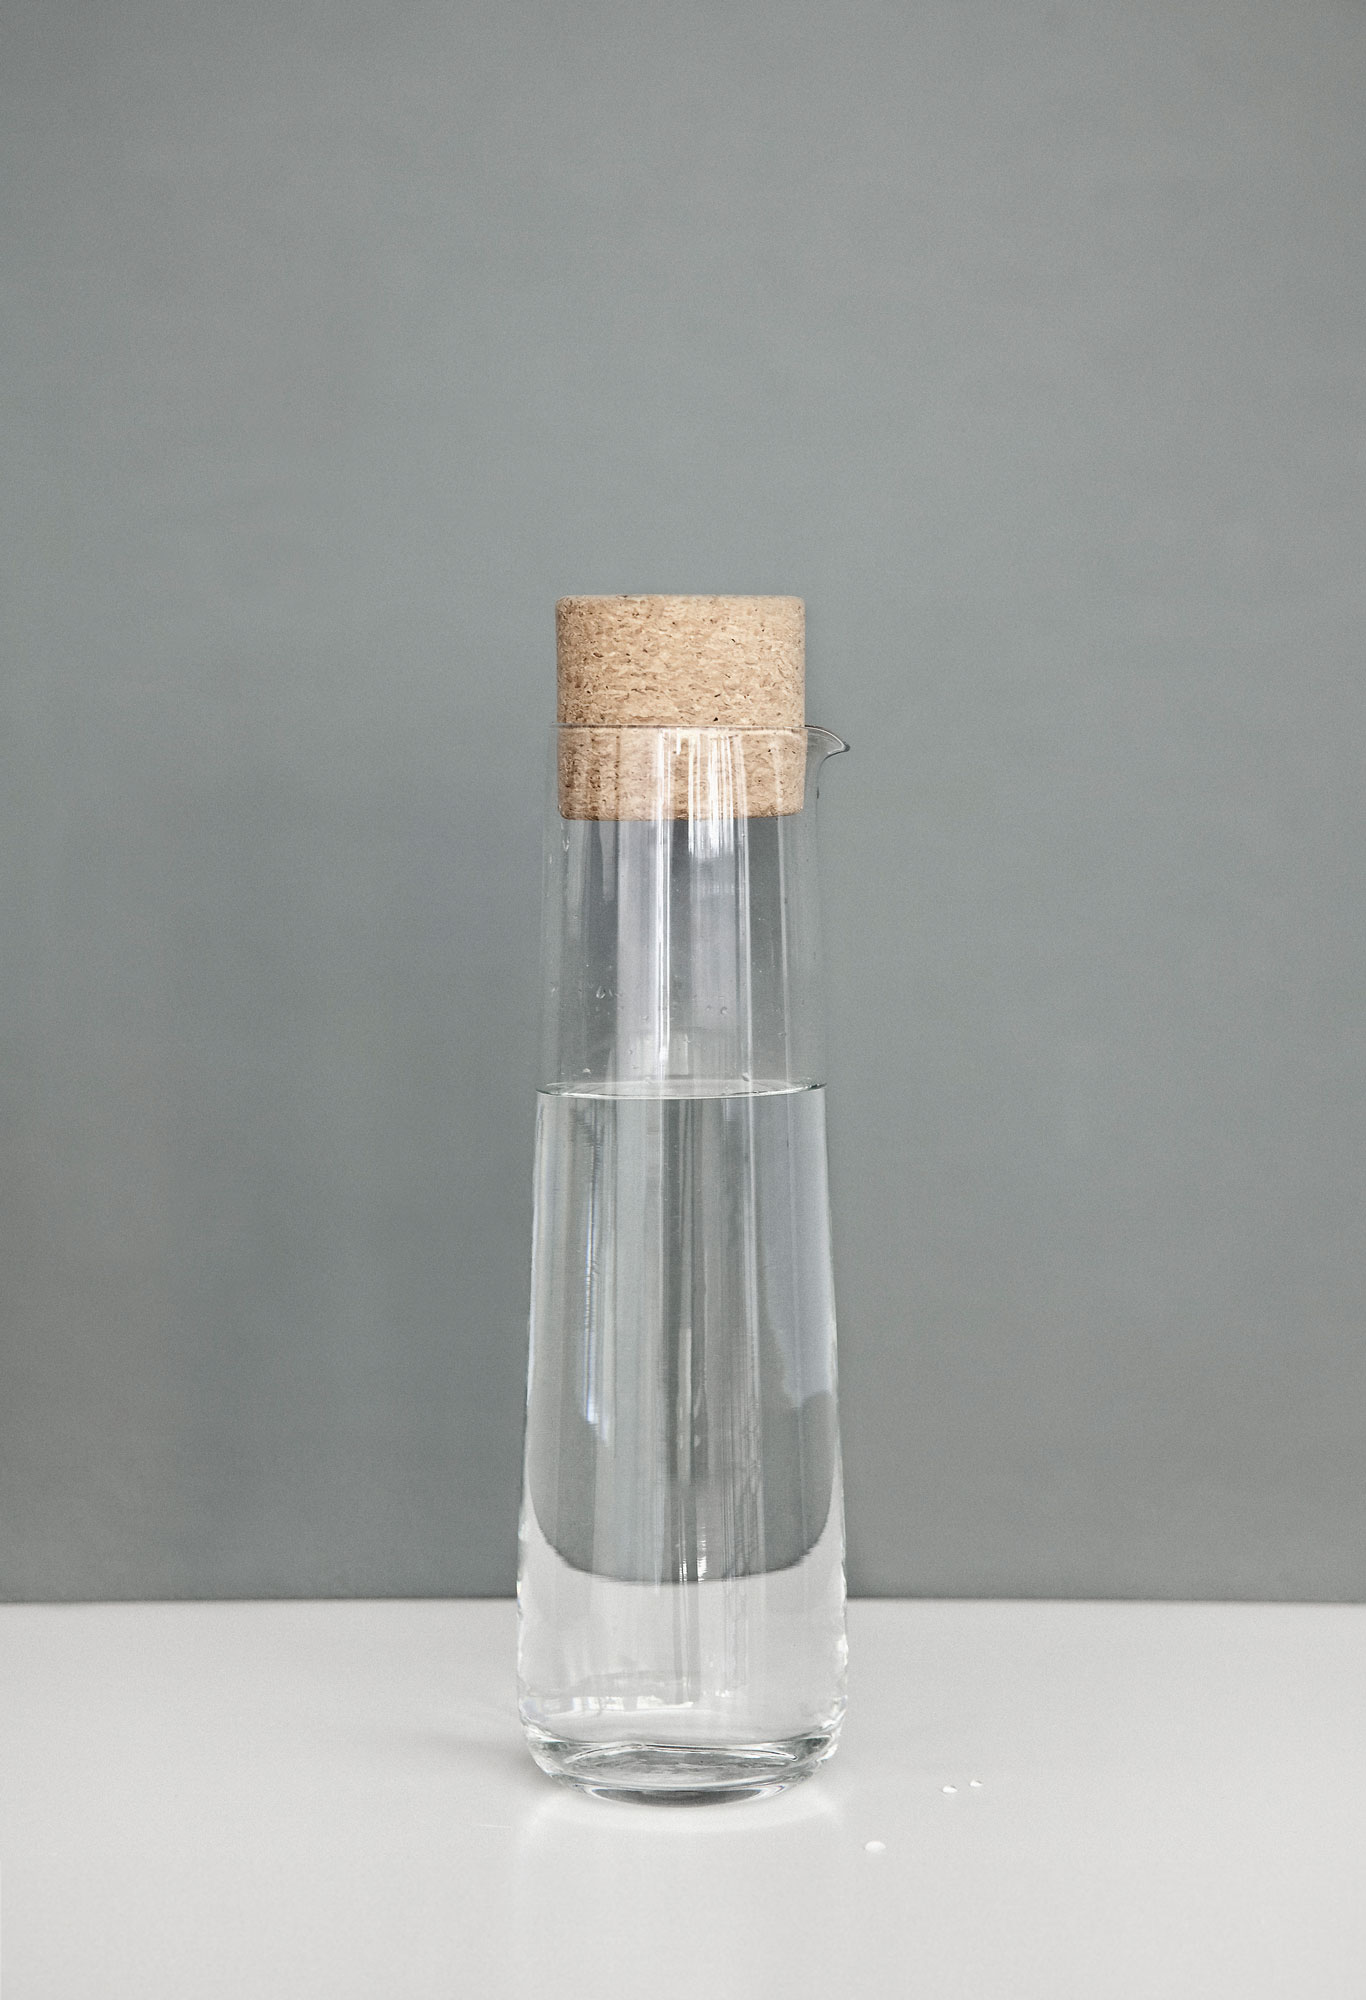 Audo Wasserkaraffe 1,2 Liter mit Korkdeckel